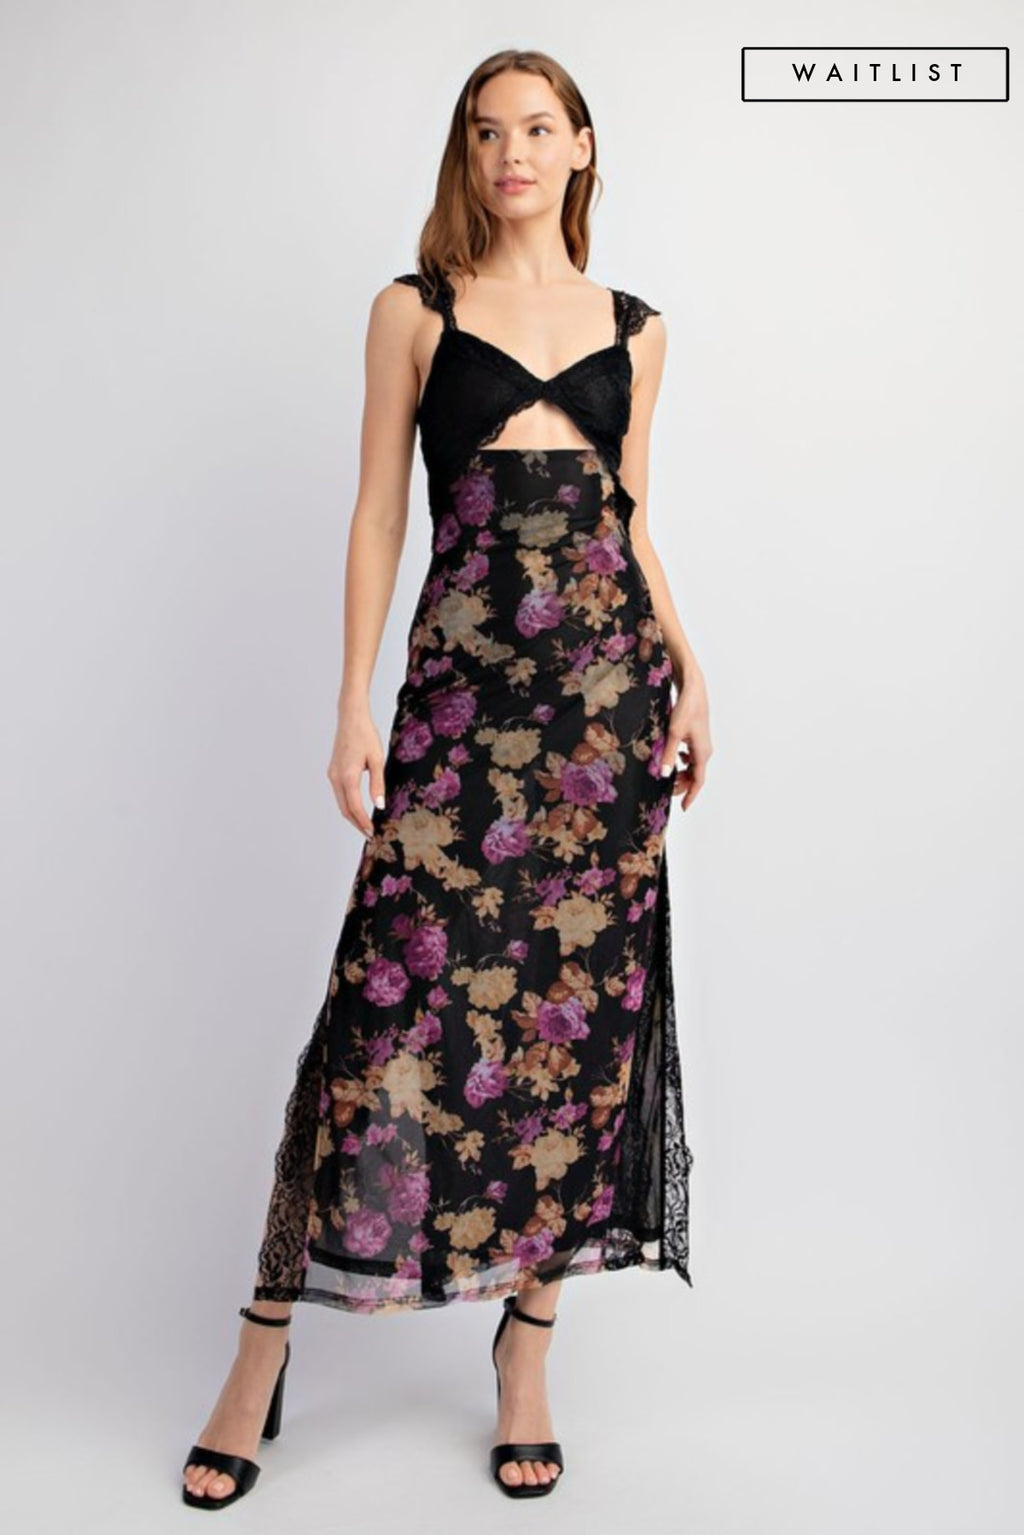  Floral Print Lace Trim Maxi Dress Black